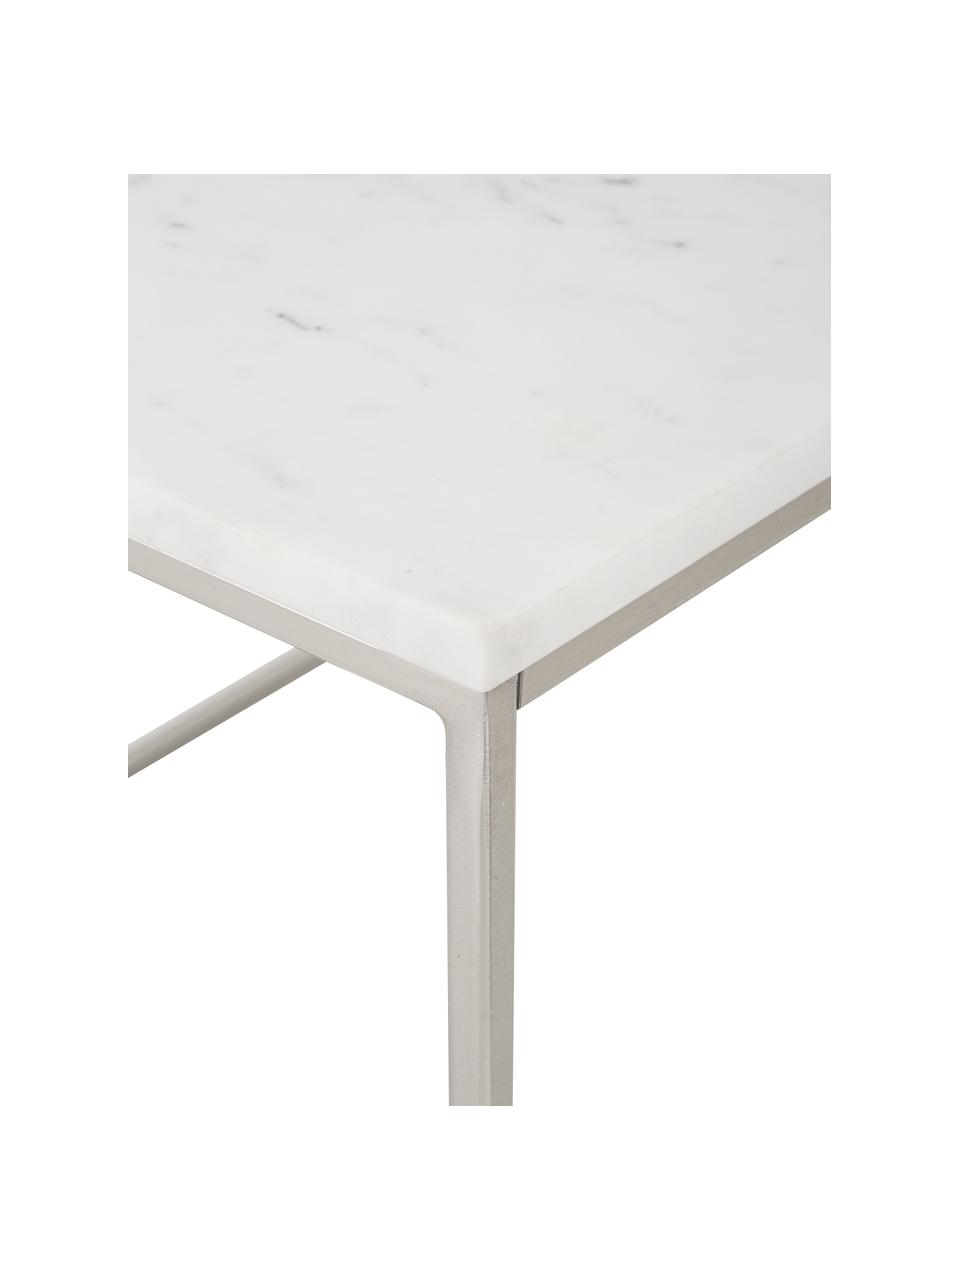 Marmor-Couchtisch Alys, Tischplatte: Marmor, Gestell: Metall, pulverbeschichtet, Weiß, marmoriert, Silberfarben, B 80 x T 45 cm